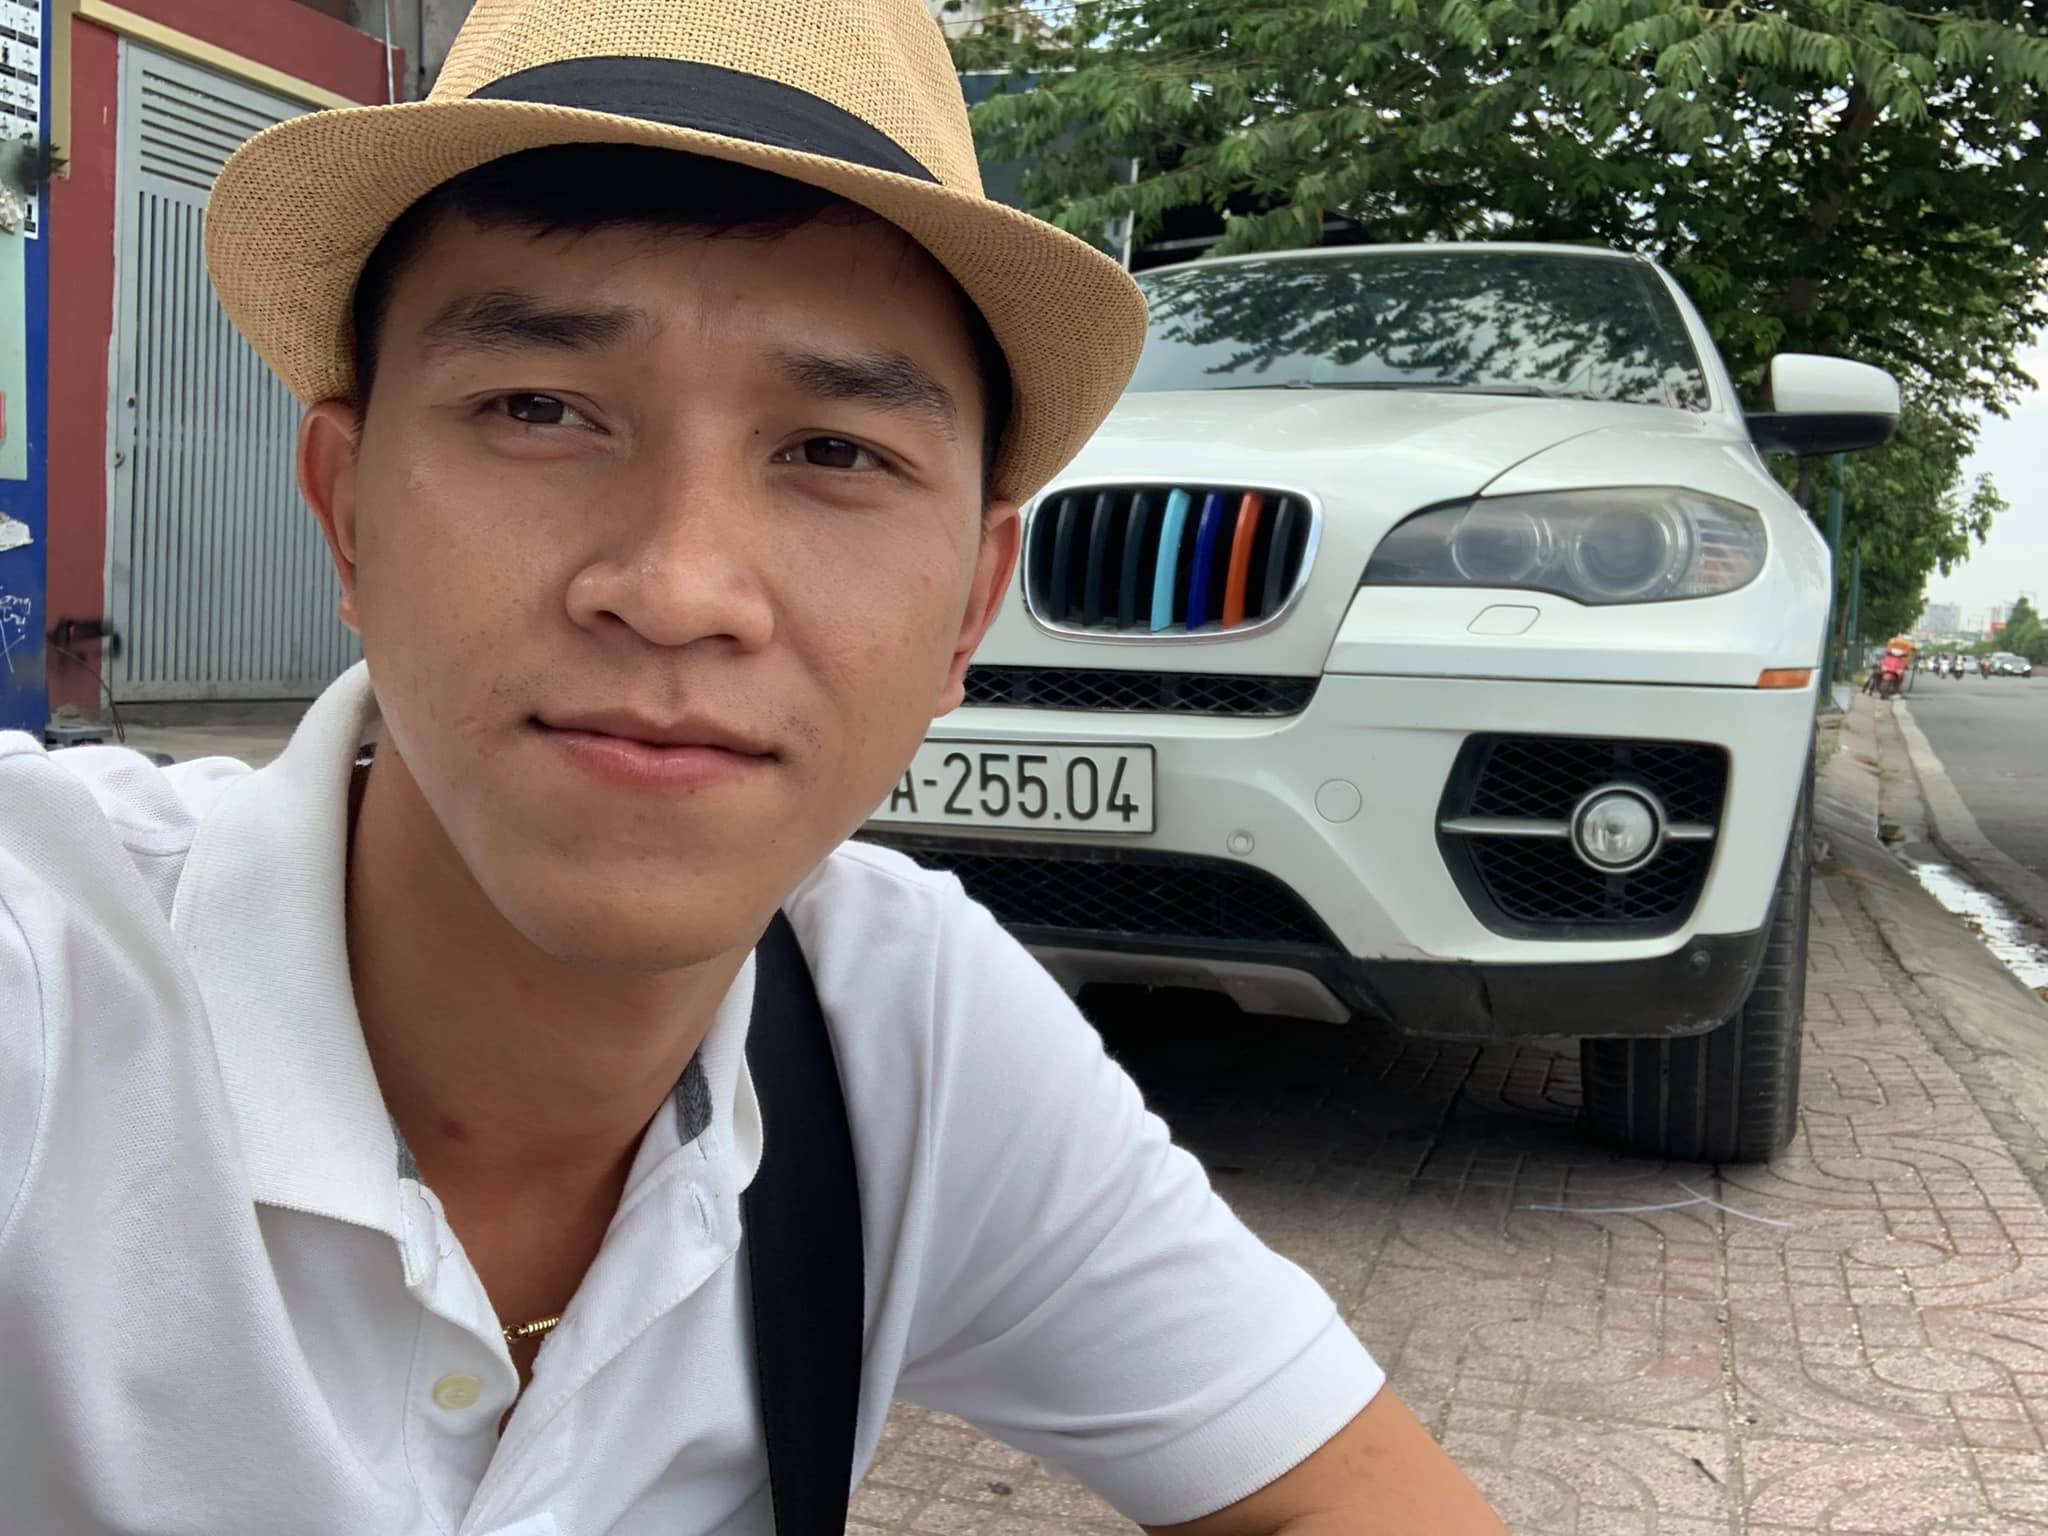 Báo Giá Nhanh Loạt Xe Ôtô Cũ Sài Gòn Bình Dương Mới Nhất 72021 tại Auto  Xuyên Việt  YouTube